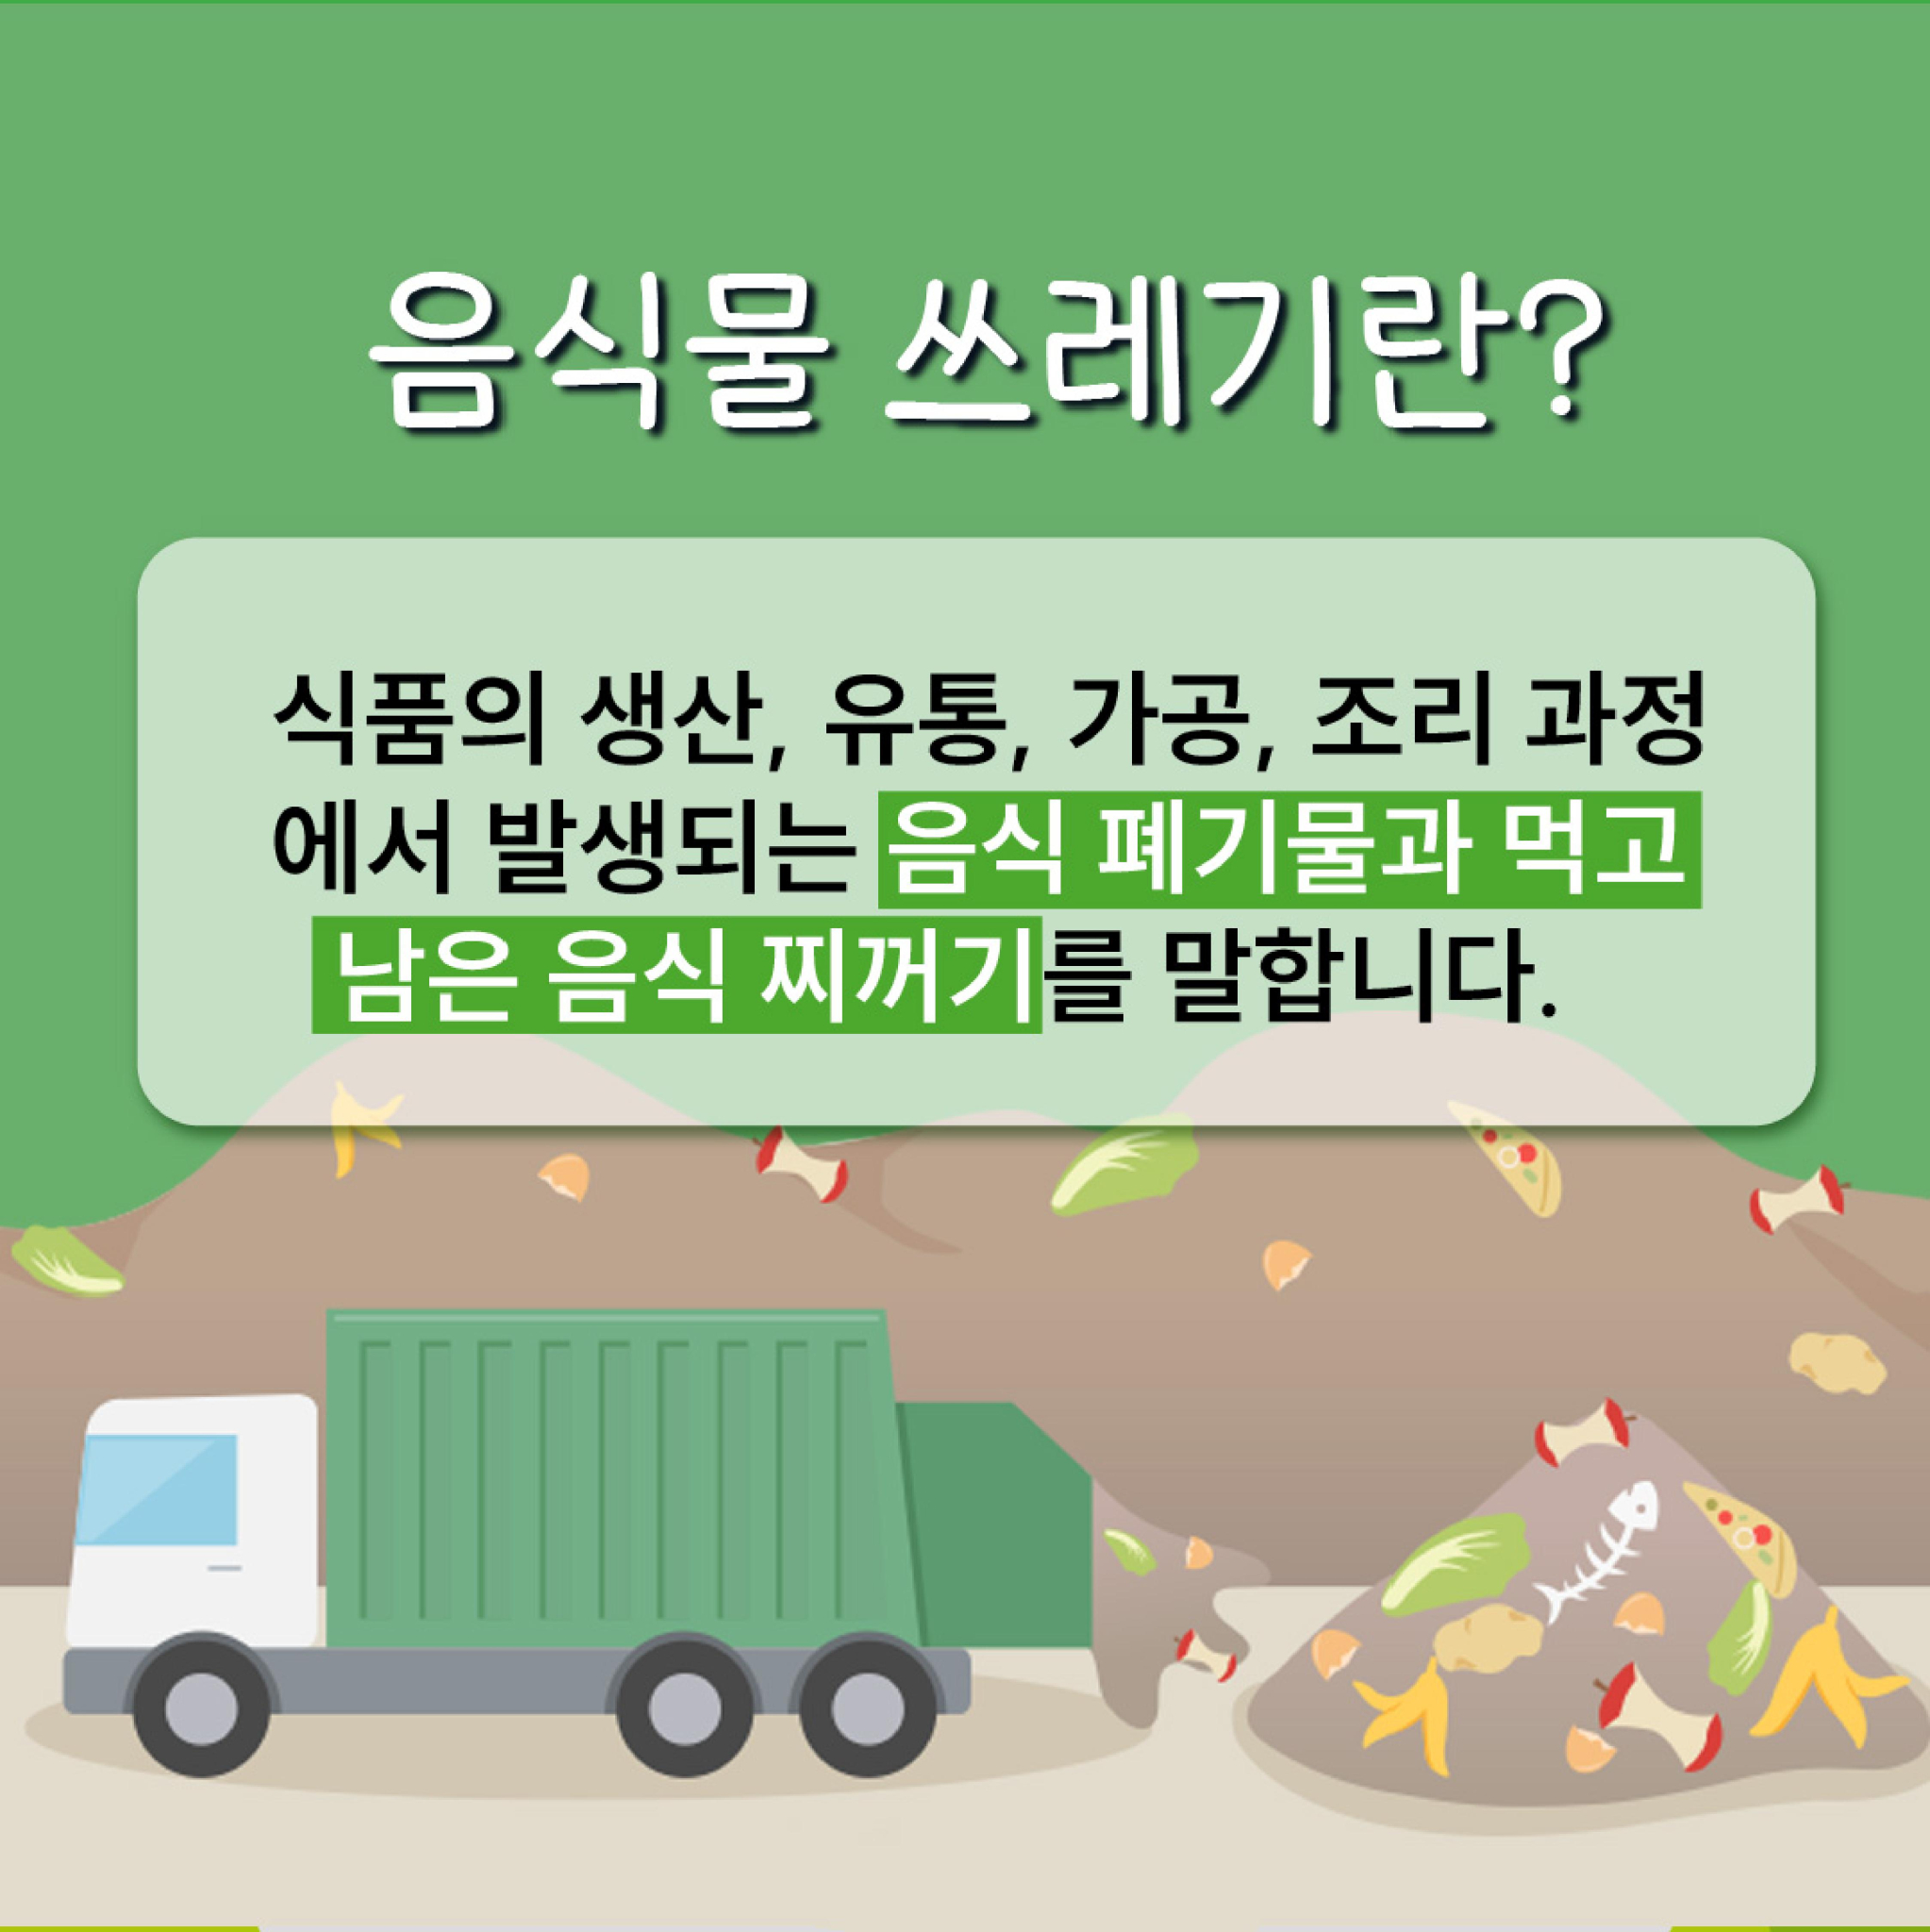 지구를지키는착한실천-음식물쓰레기줄여요 (1)-page-002